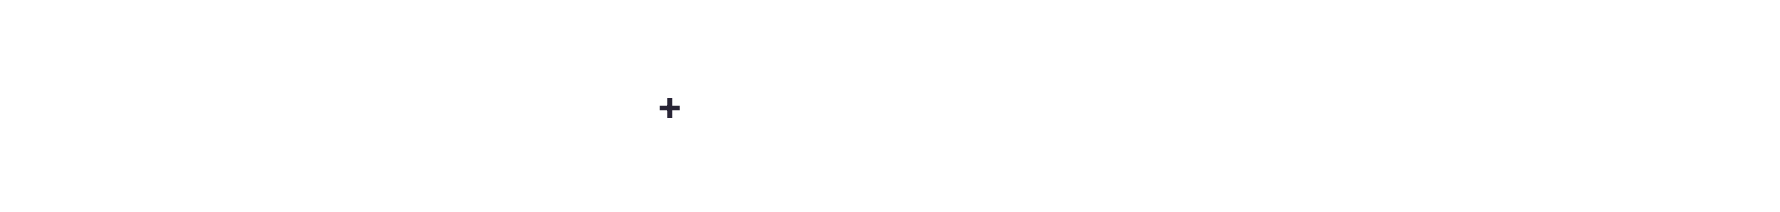 매월 신규 강의 공개 예정